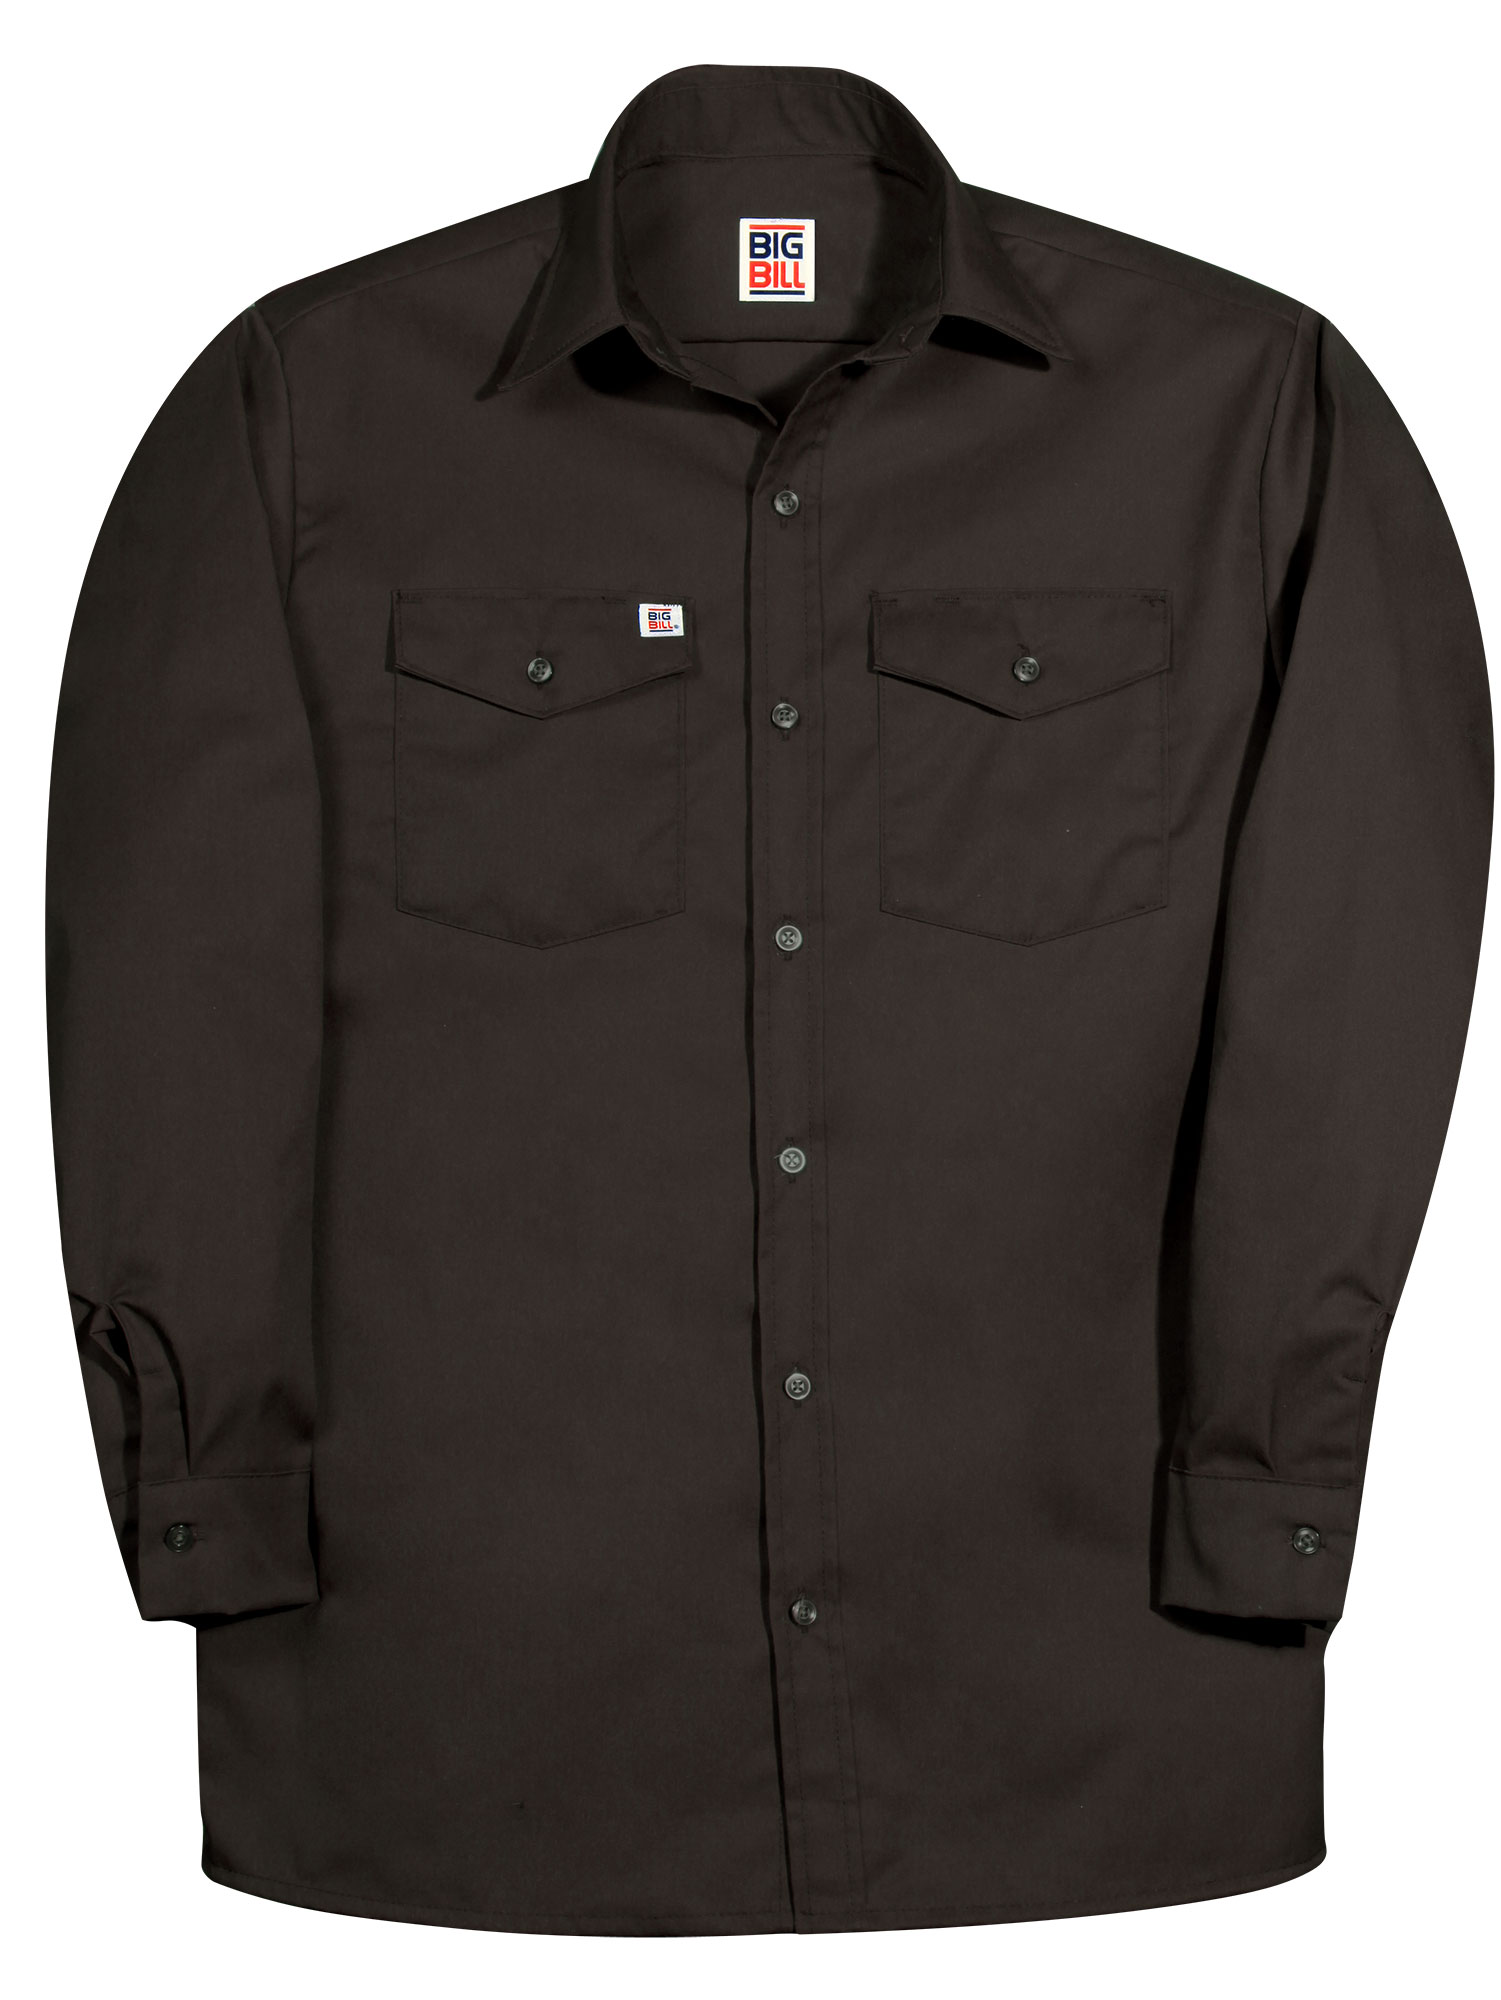 Big Bill Long Sleeve Button Front Closure Work Shirt - 147